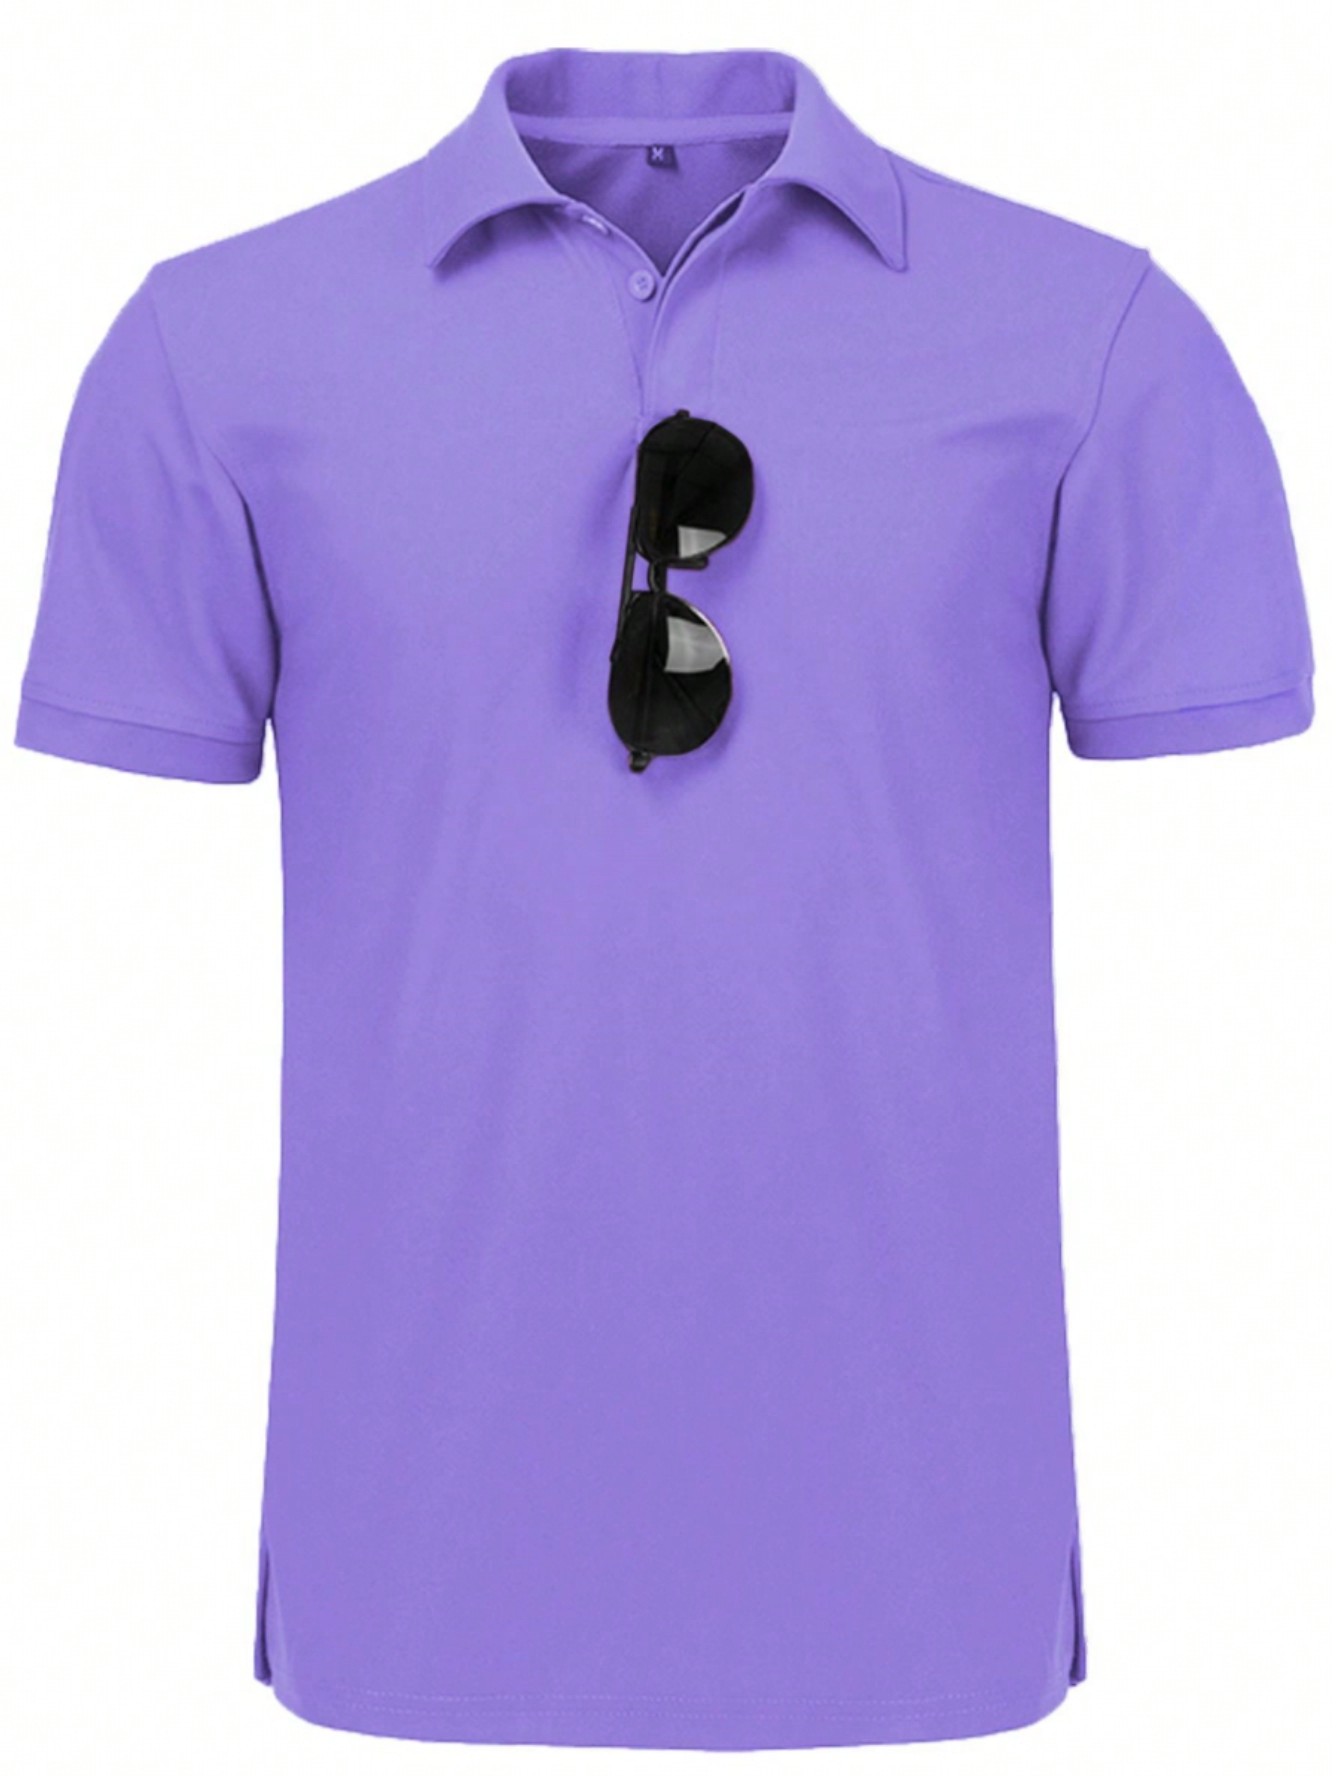 Мужская рубашка поло с коротким рукавом для отдыха, фиолетовый